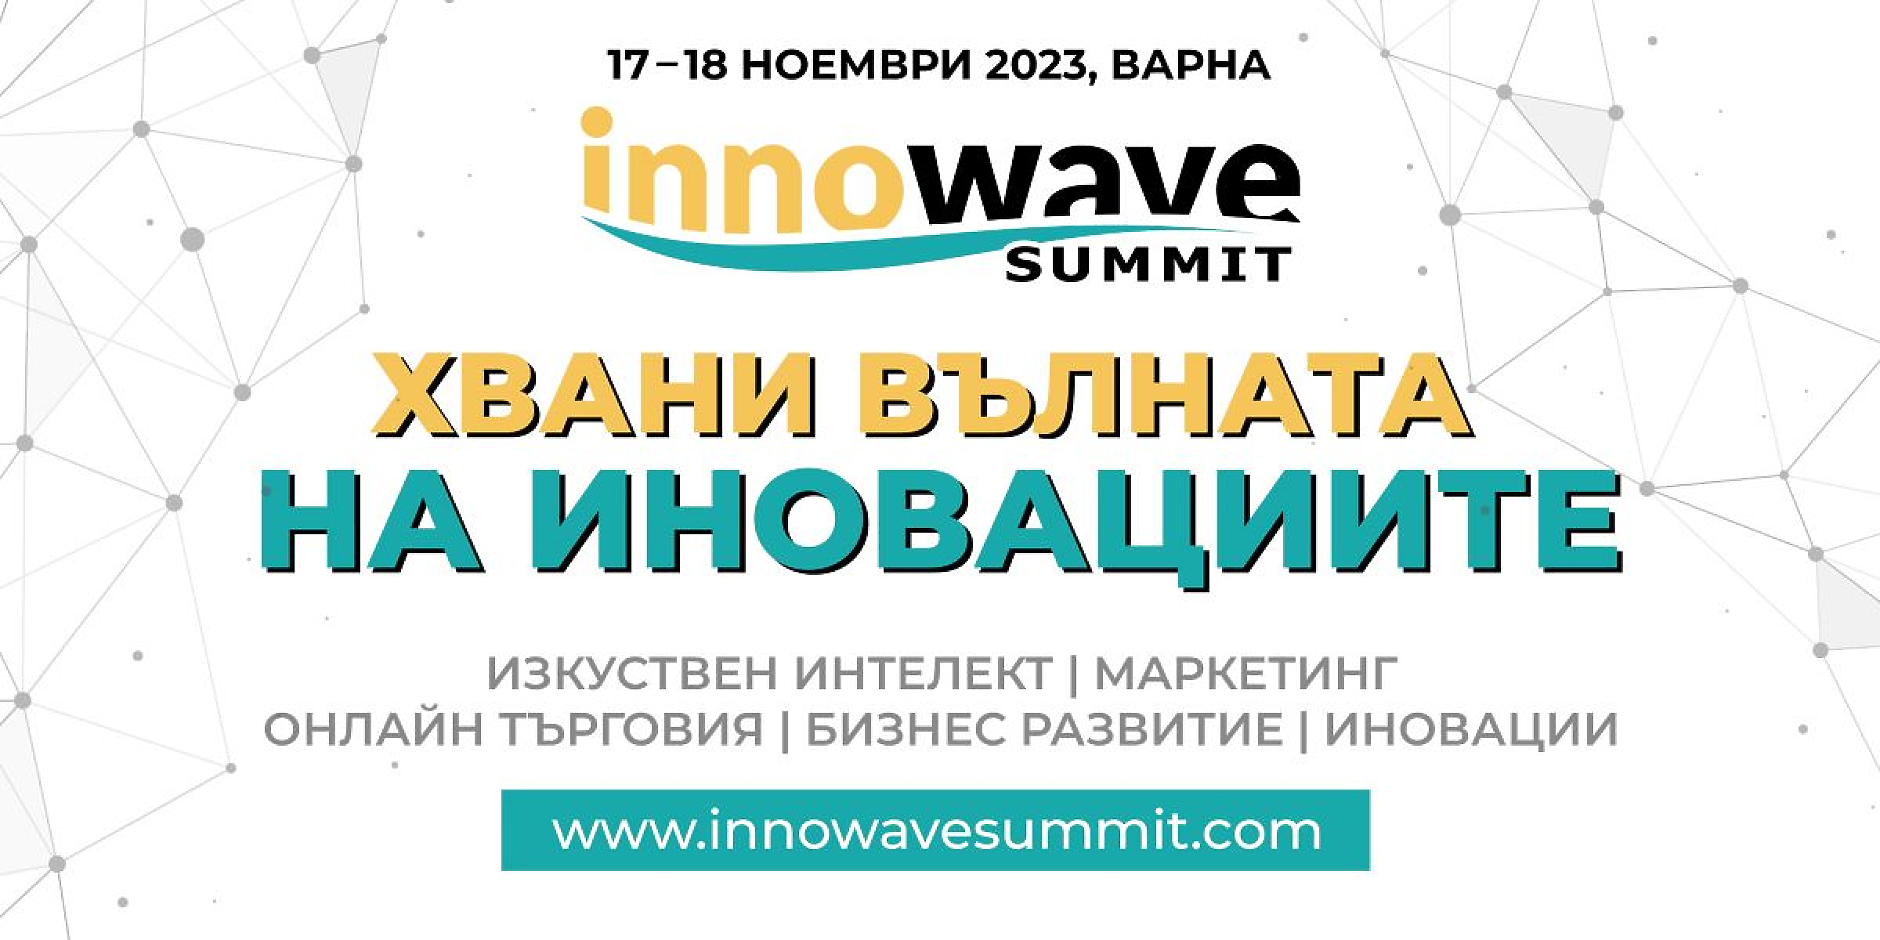 Най-големите имена в маркетинга и иновациите се събират във Варна за Innowave Summit